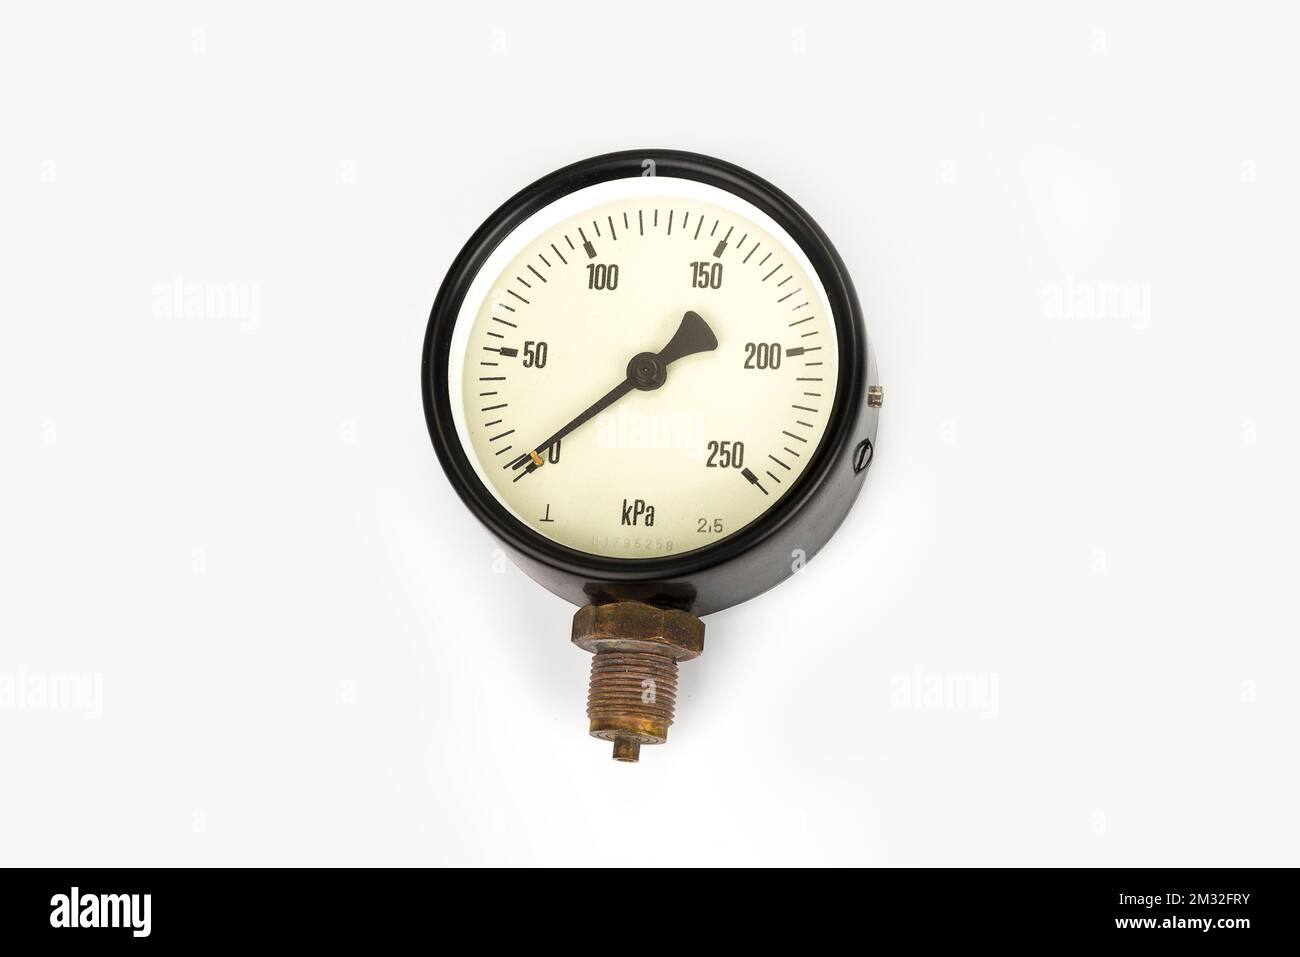 Misuratore di pressione per caldaie industriali per riscaldamento centralizzato Foto Stock